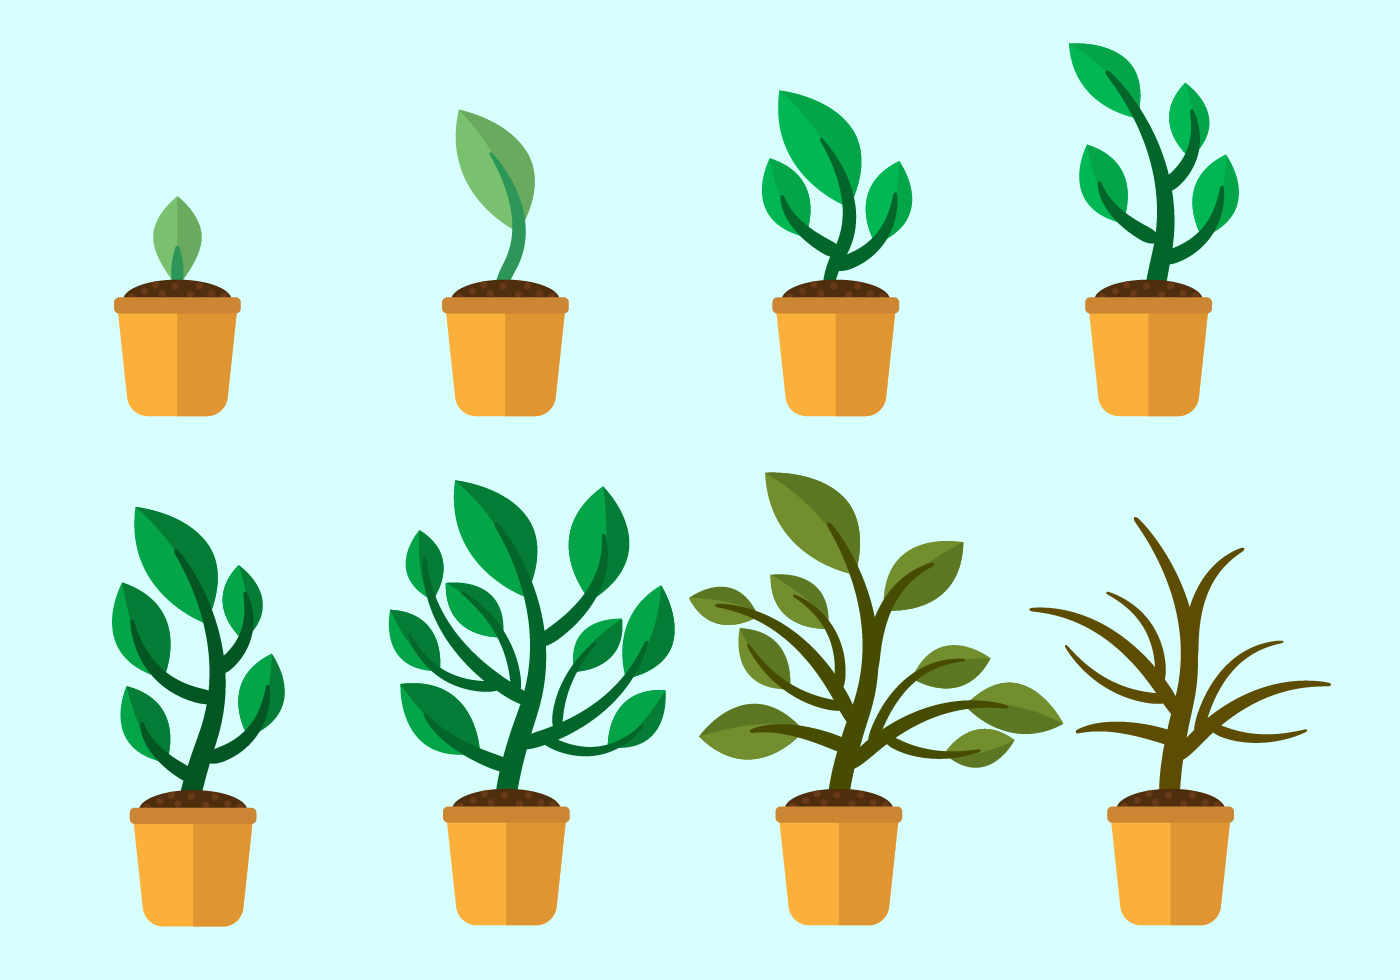 Grow Up Plants Vector - Download Free Vector Art, Stock ...